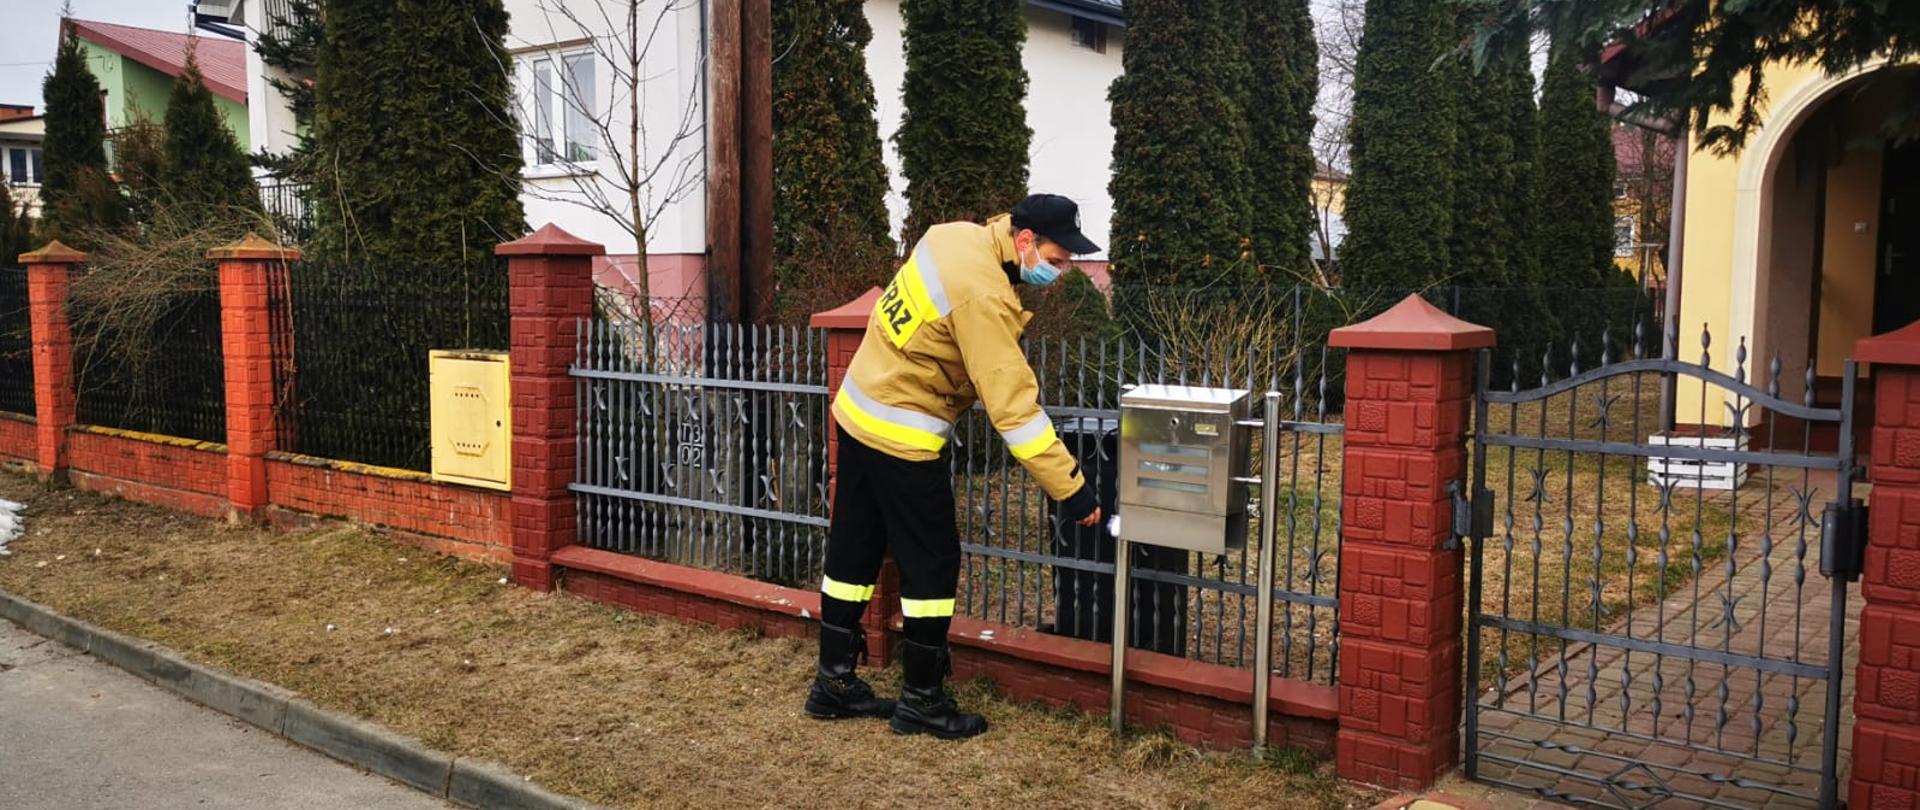 Zdjęcie przedstawia druha Ochotniczej Straży Pożarnej, który wkłada ulotkę do skrzynki pocztowej. W tle dom jednorodzinny.